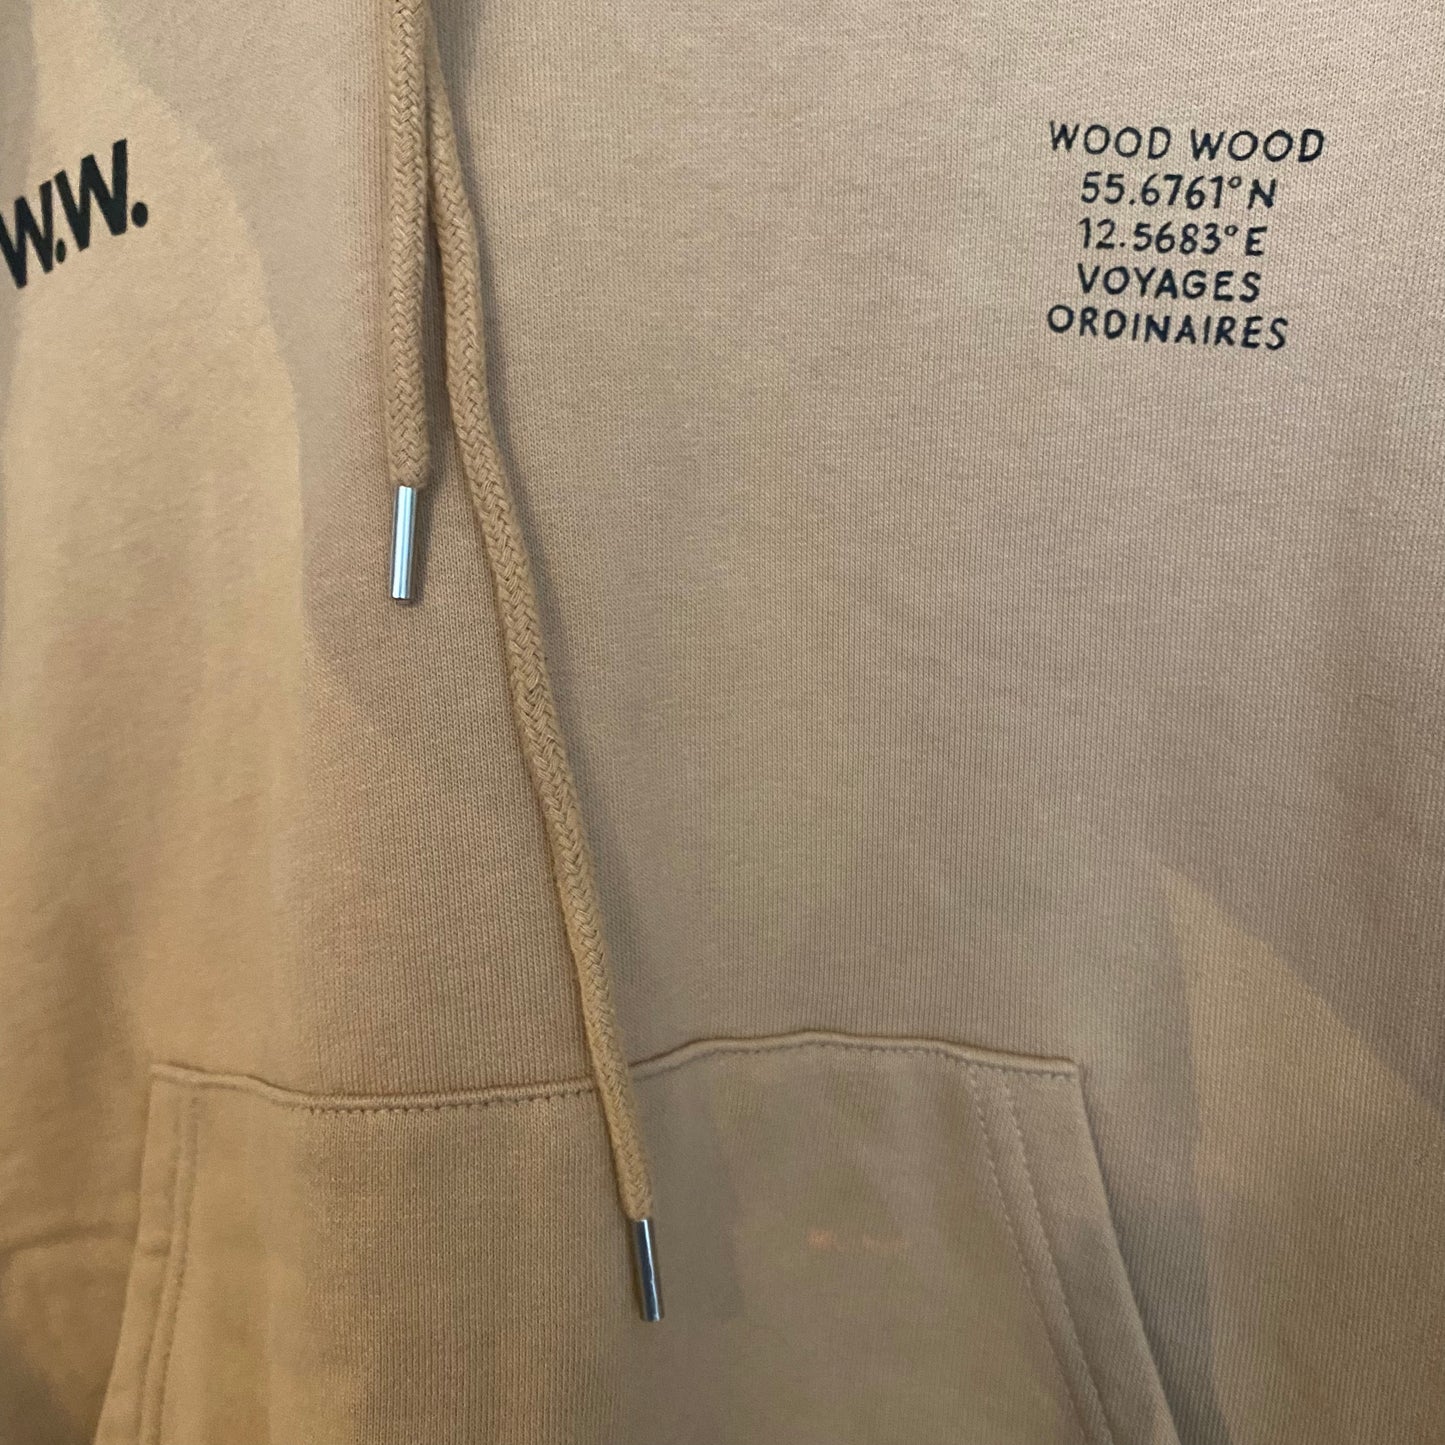 Wood Wood hoodie